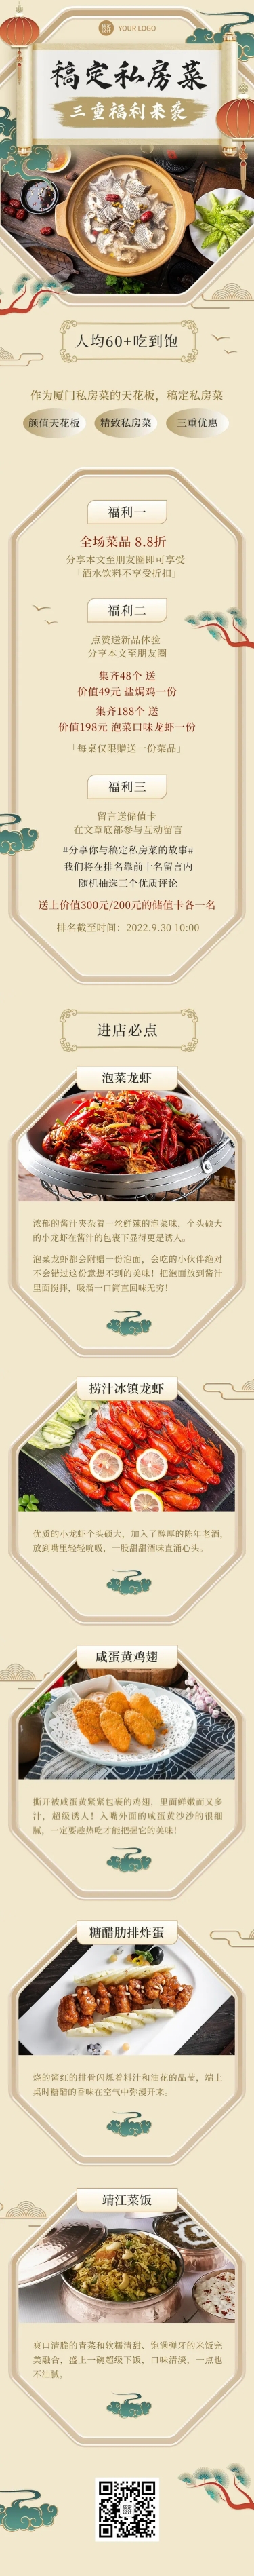 餐饮美食私房菜新品上市中国风文章长图预览效果